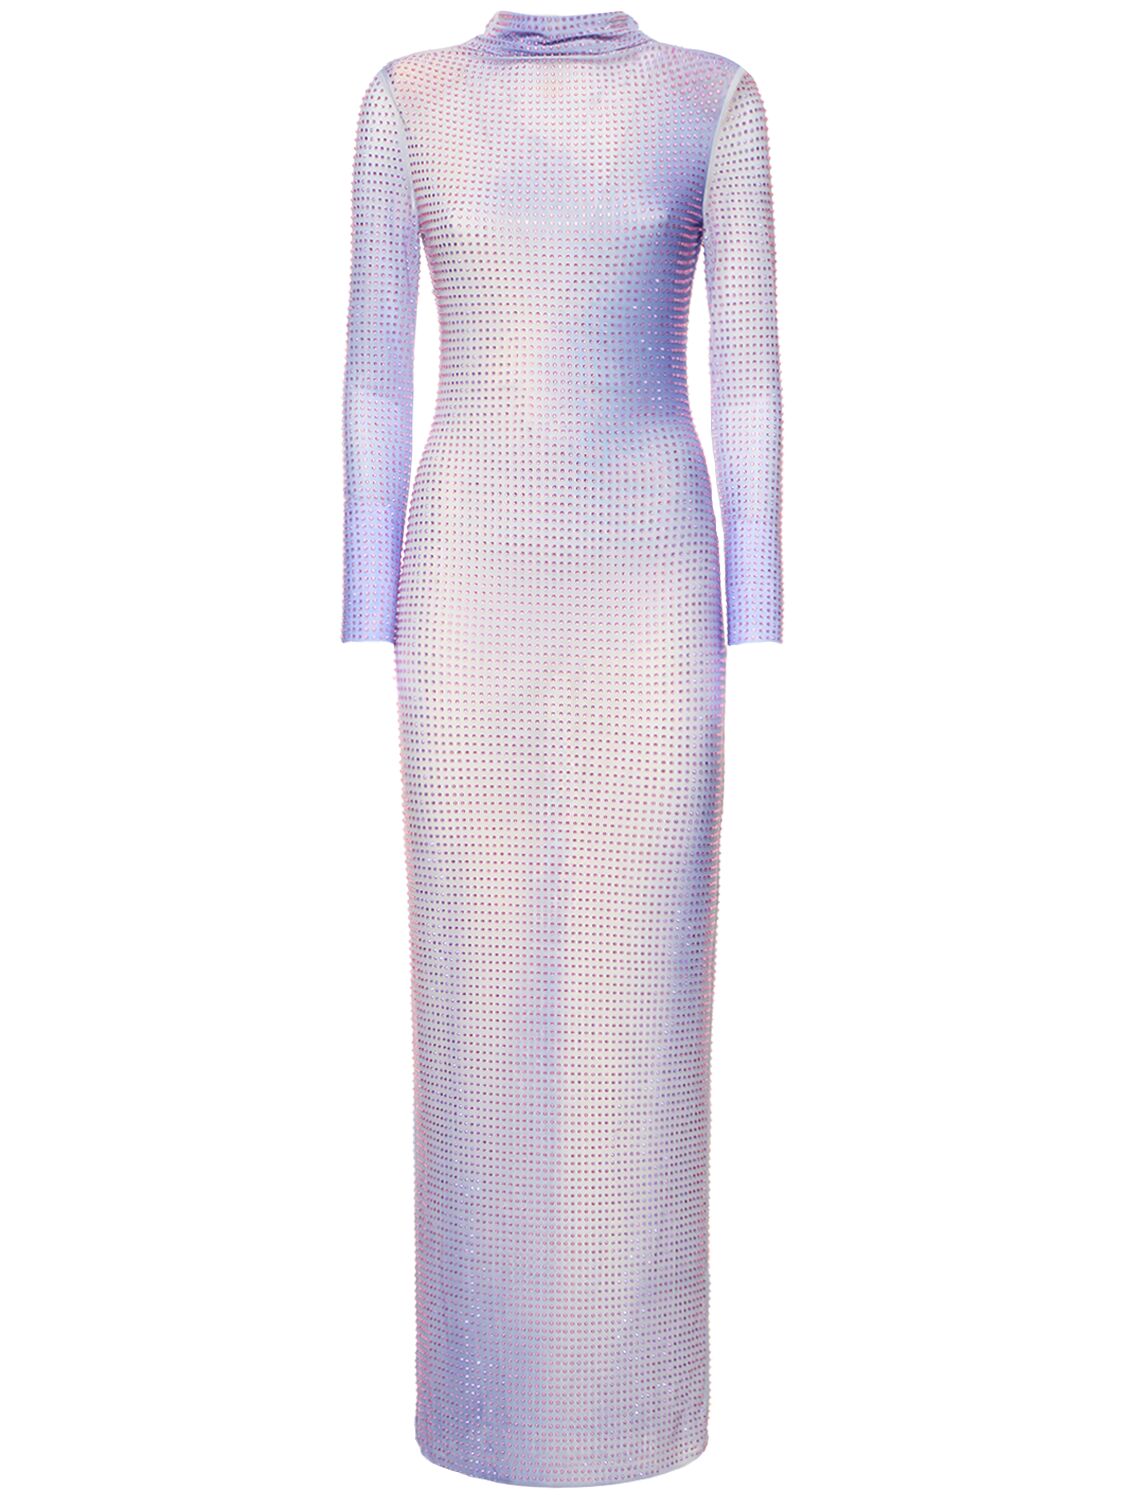 Image of Embellished Maxi Dress